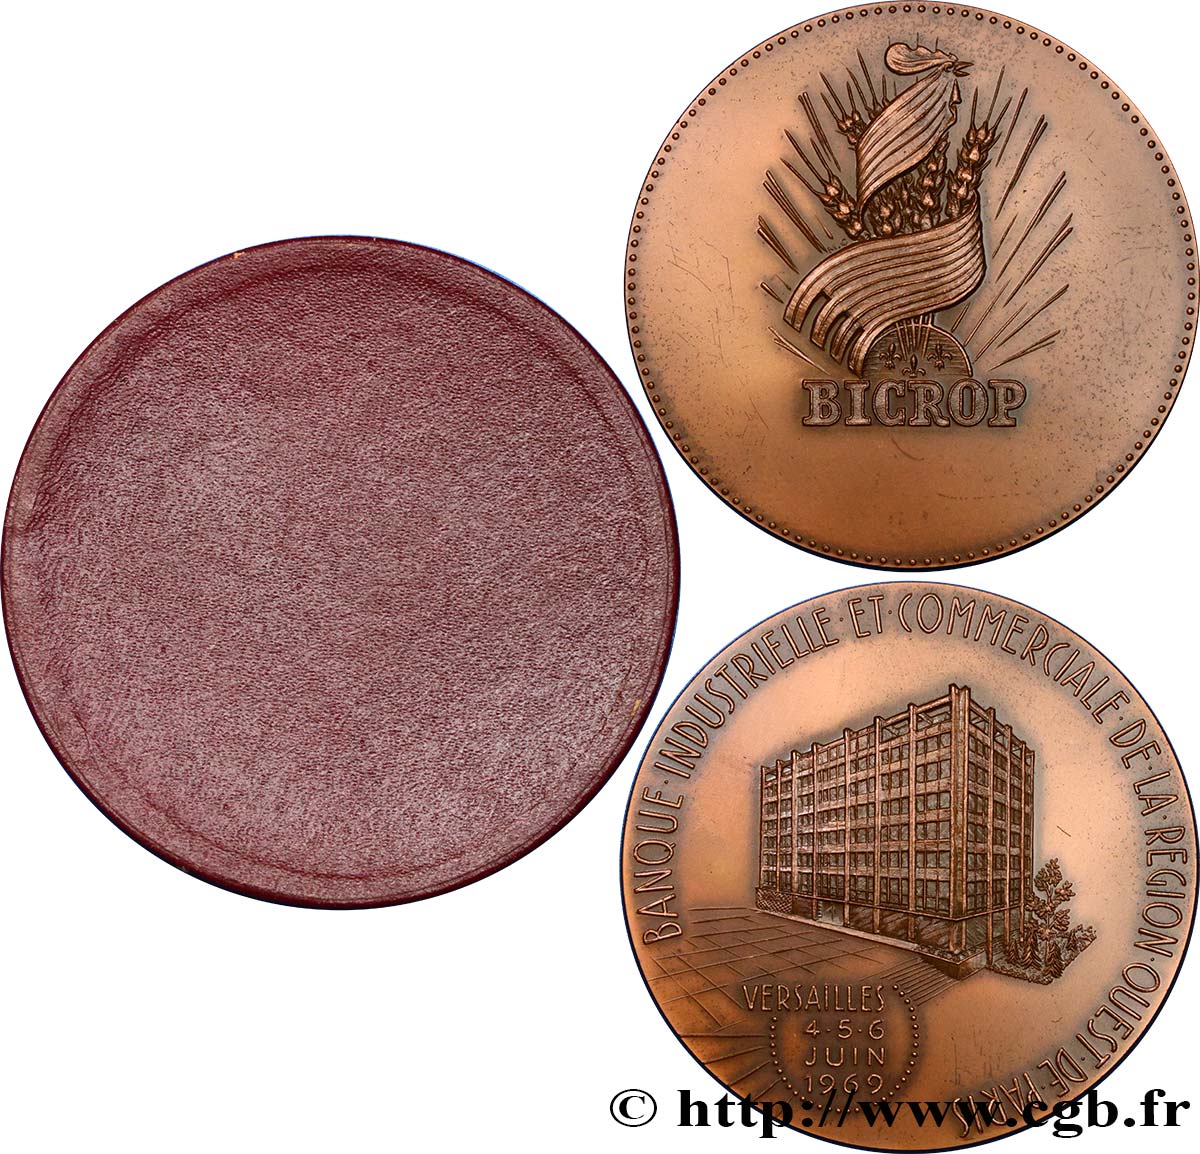 BANQUES - ÉTABLISSEMENTS DE CRÉDIT Médaille, Banque BICROP EBC